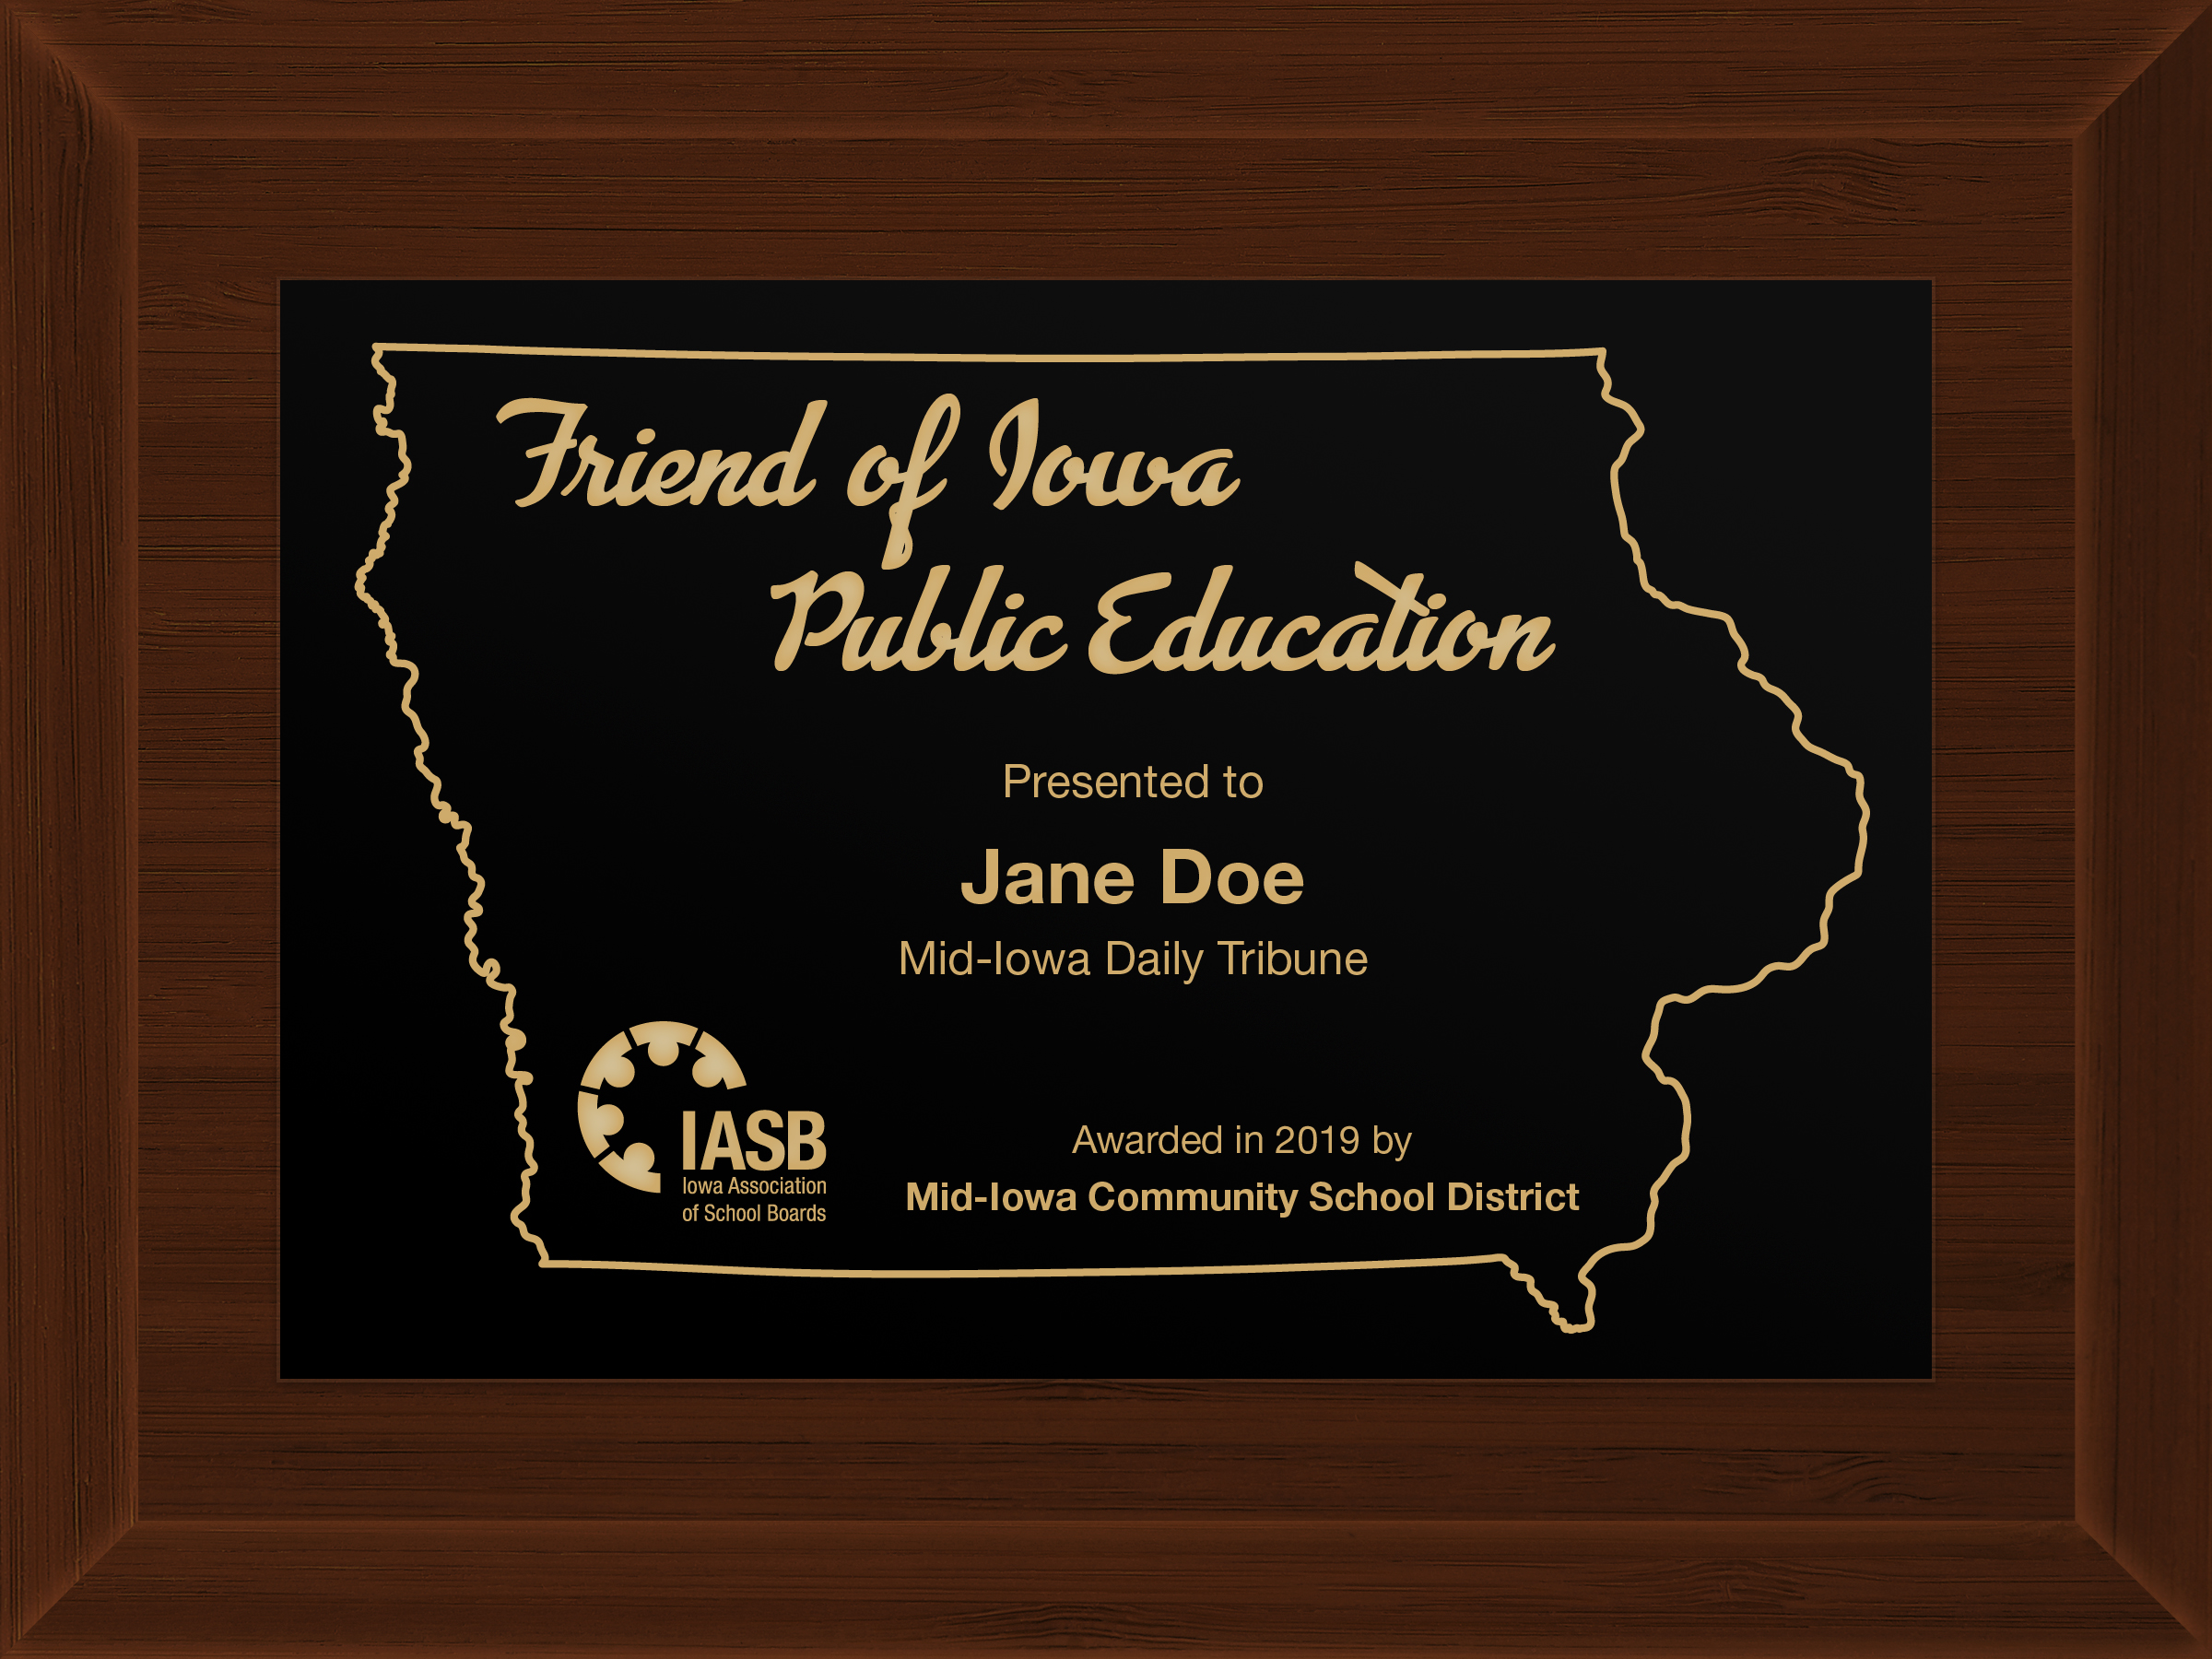 Friend of Iowa Public Education plaque